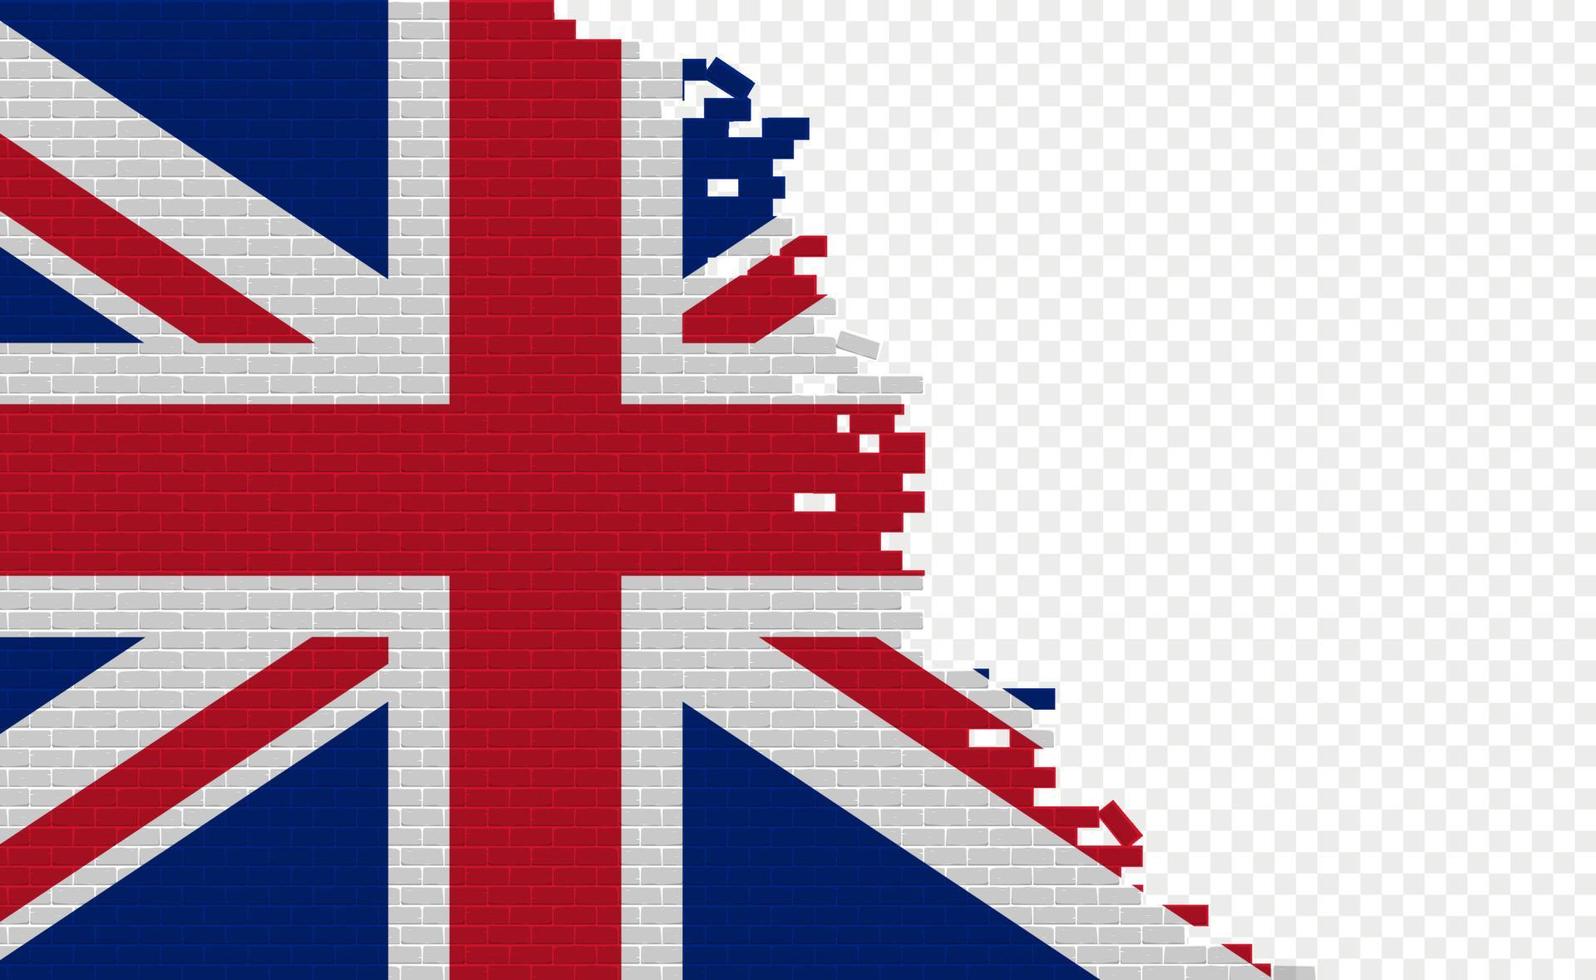 drapeau du royaume-uni sur le mur de briques cassées. champ de drapeau vide d'un autre pays. comparaison de pays. édition facile et vecteur en groupes.